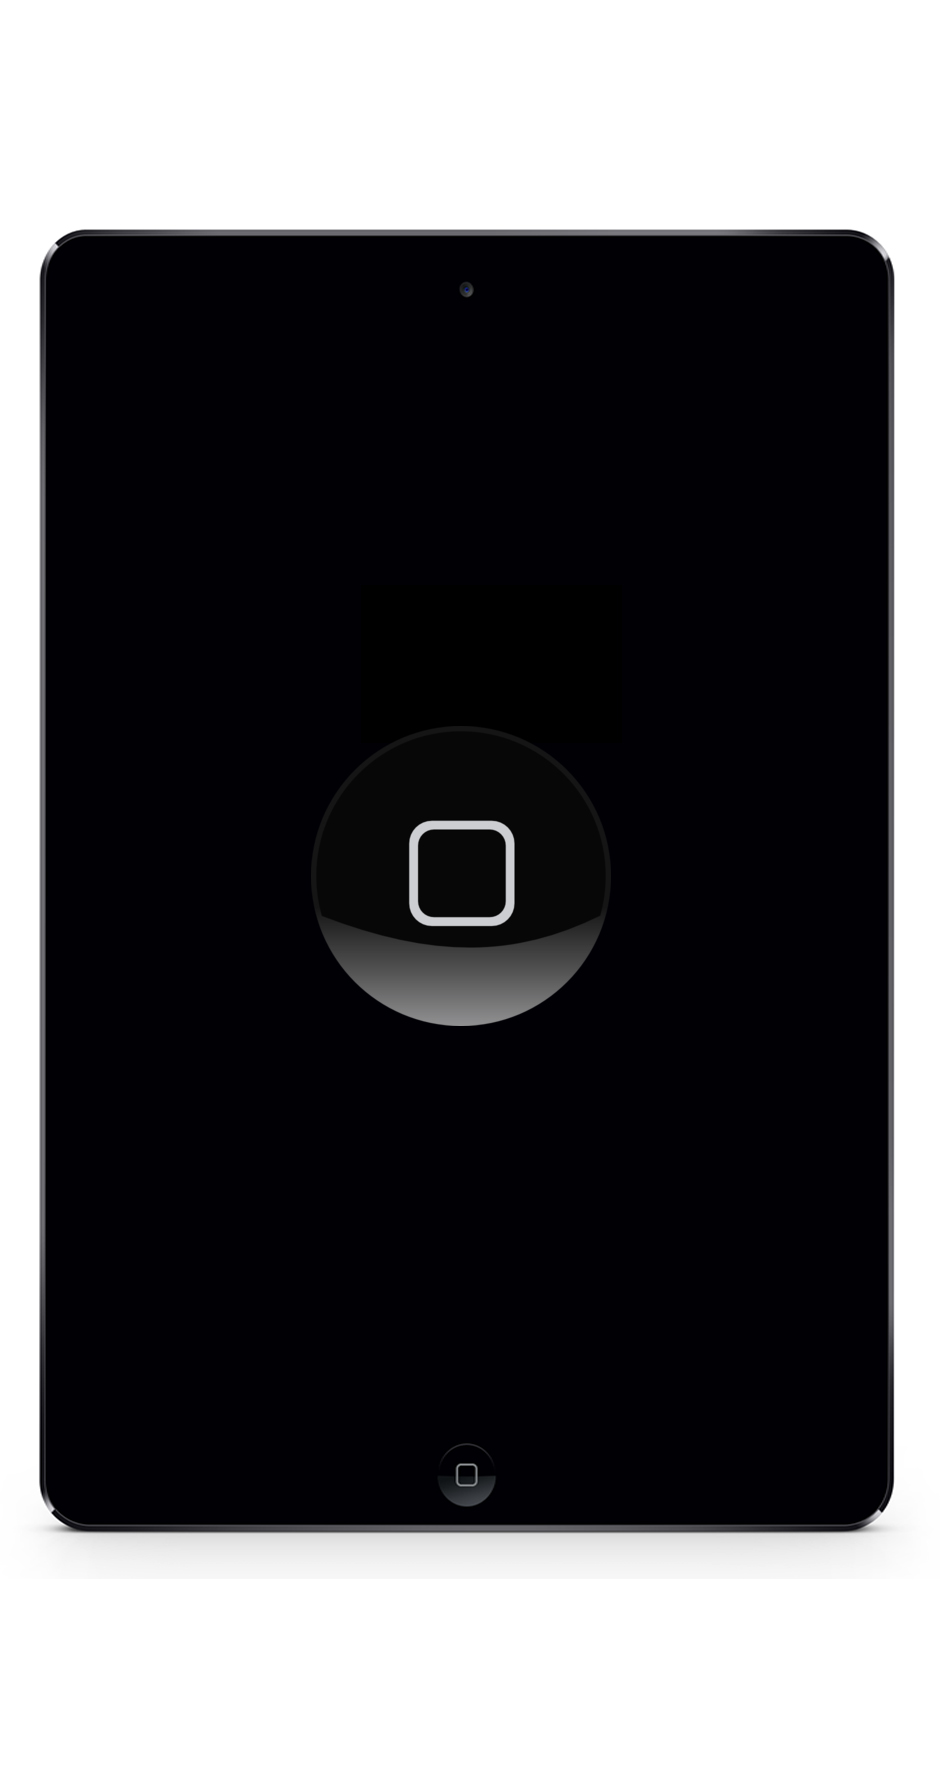 iPad Mini 2 Reparatur Berlin Home-button